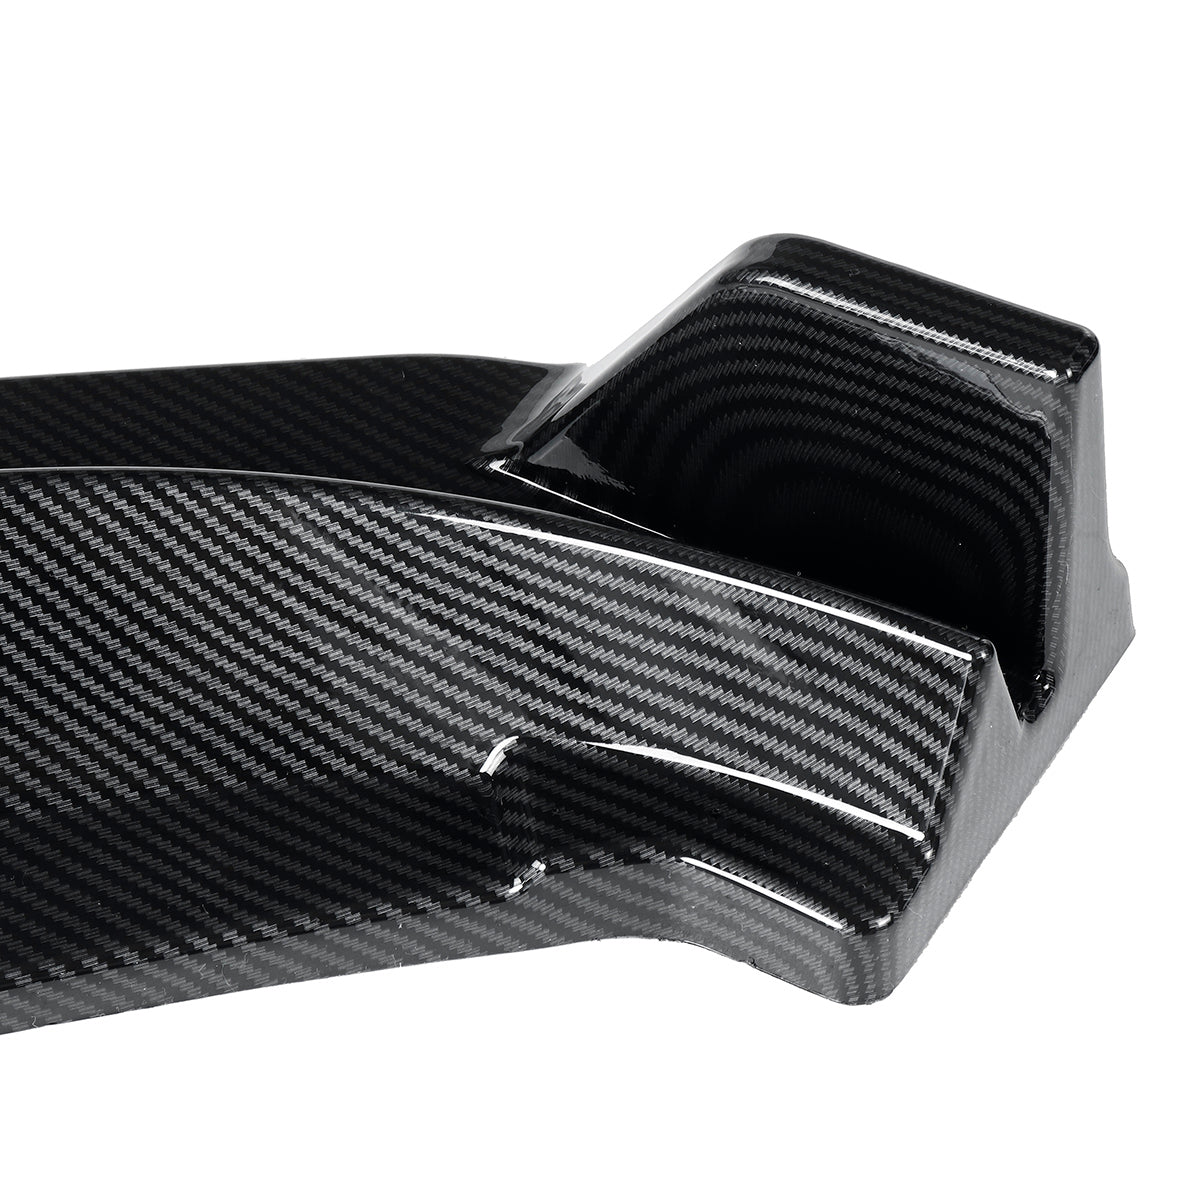 Black 3Pcs Carbon Fiber Look Car Front Bumper Lip Body Kit Spoiler Diffuser Bumper Lip Deflector Lips Protector Cover For VW Passats 2020